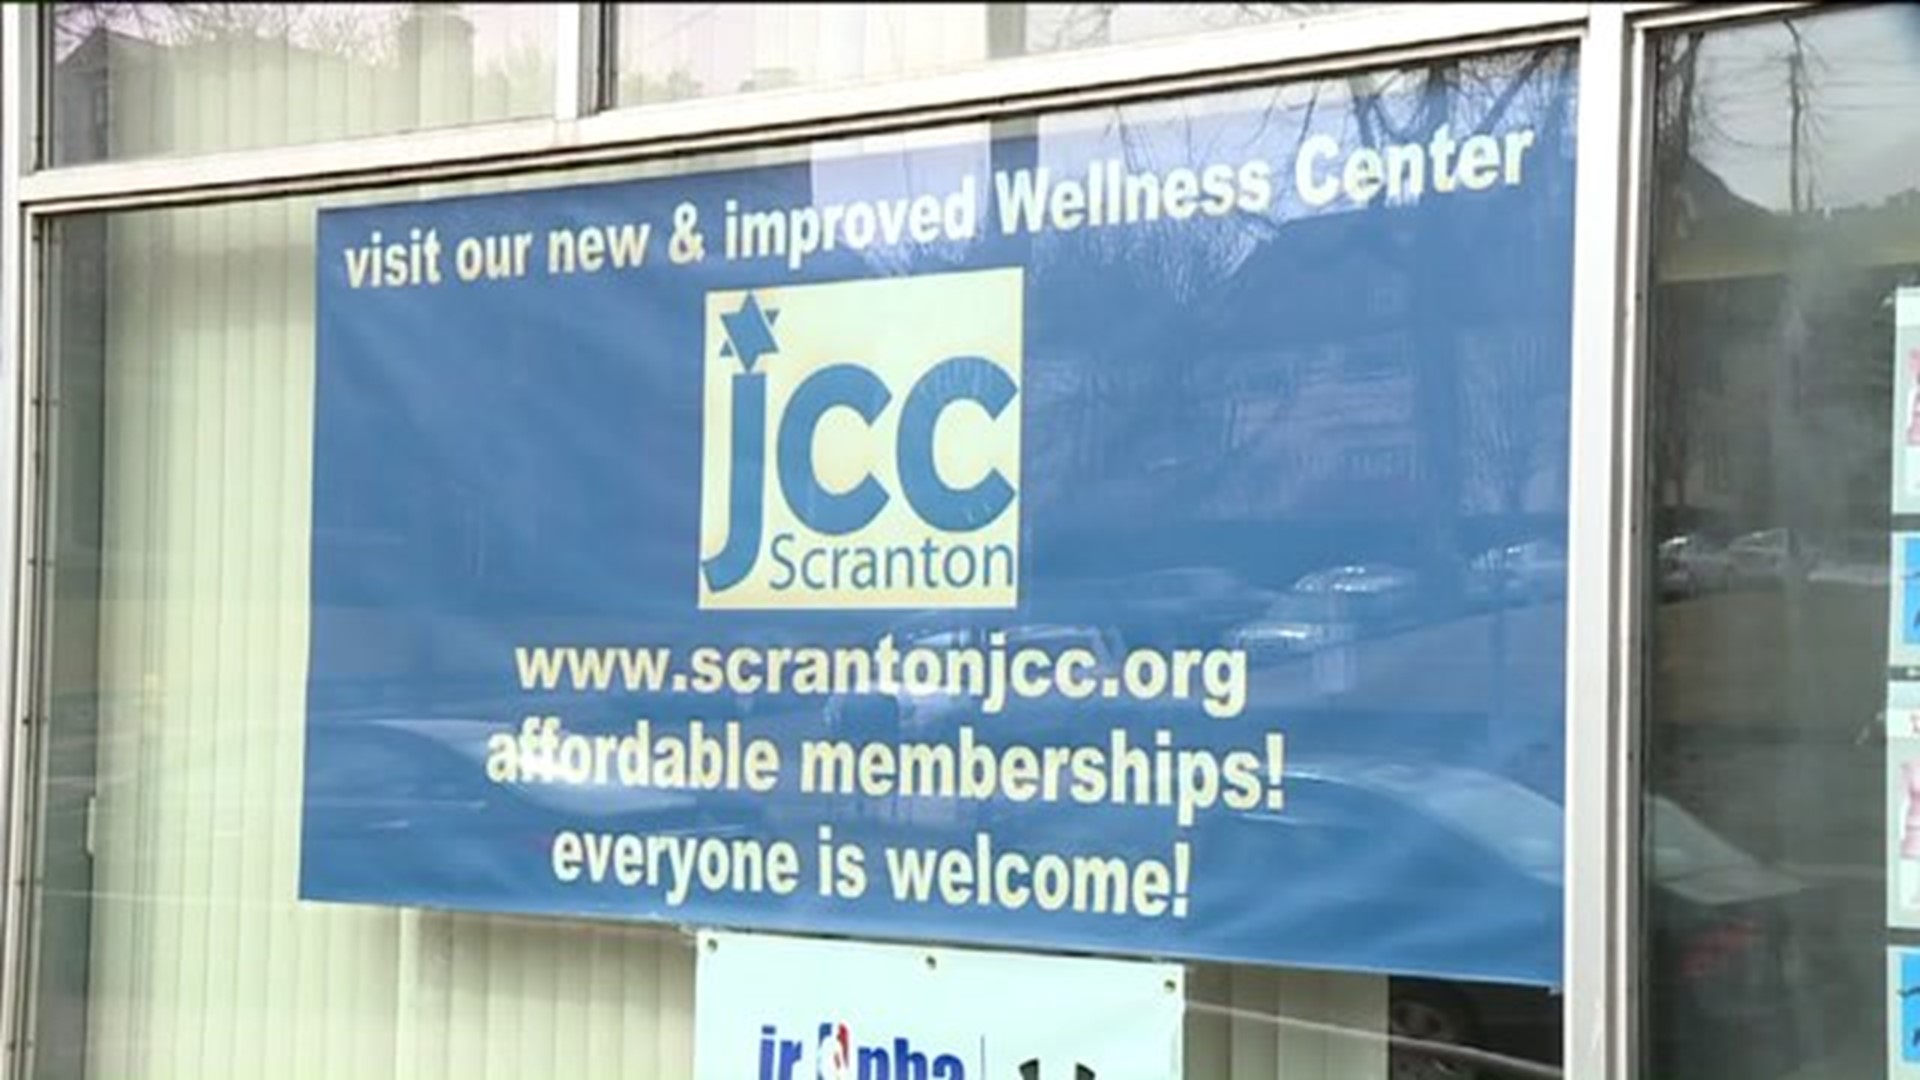 No Threats at JCC in Scranton, but Increased Awareness